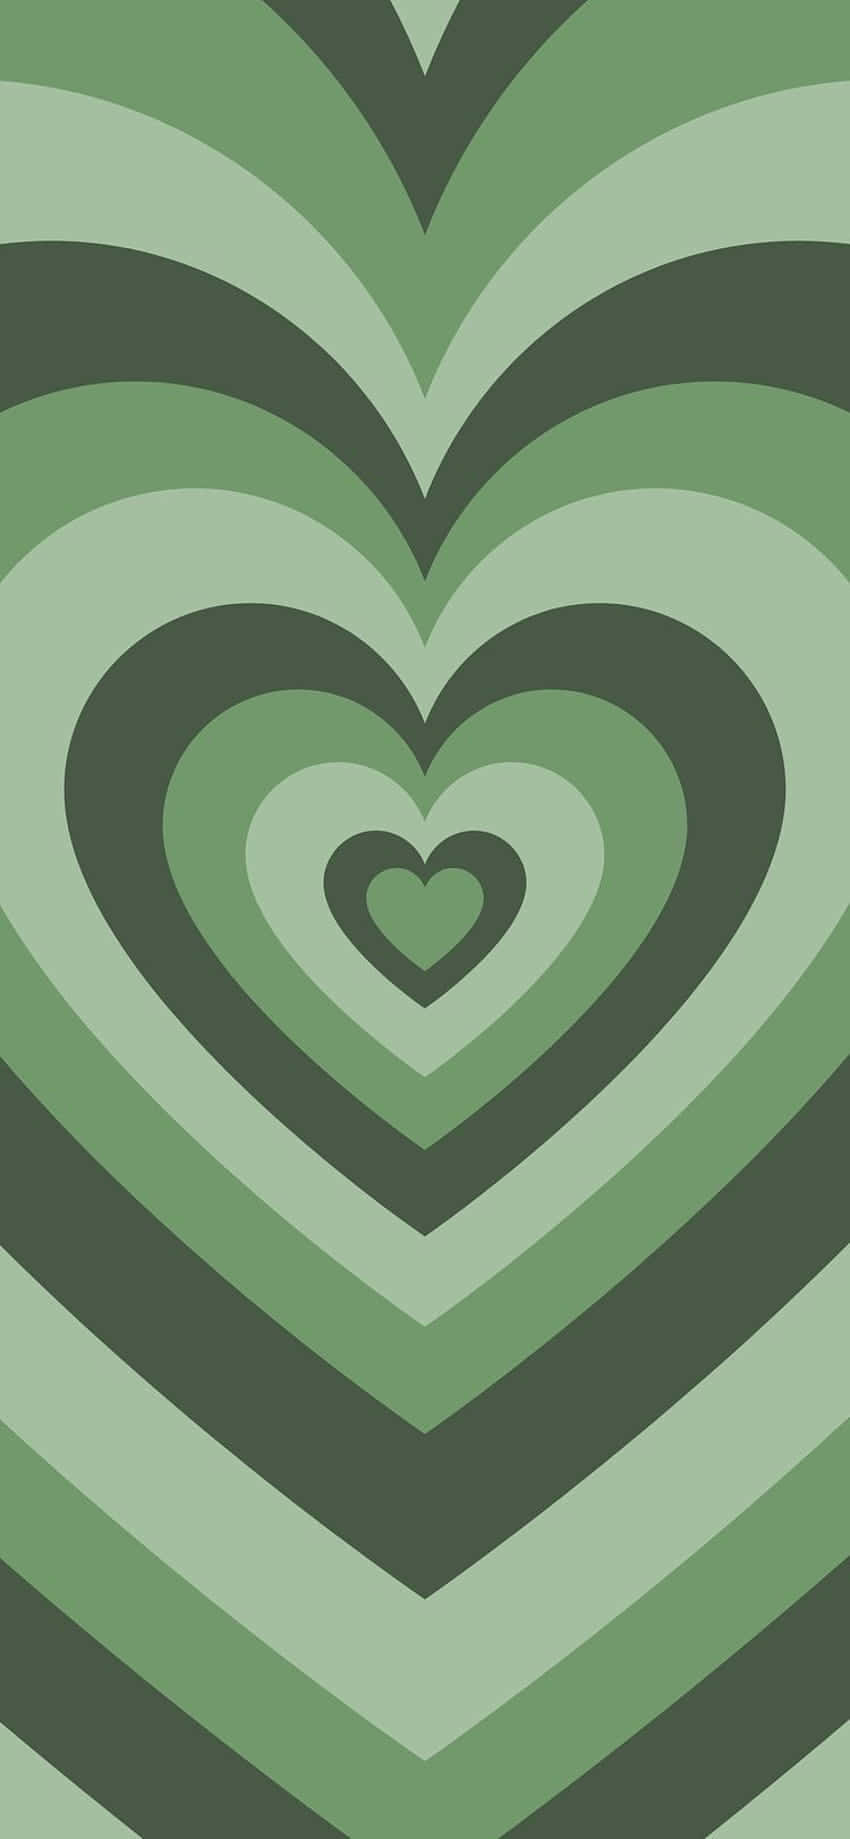 Mint Heart Pattern Aesthetic.jpg Wallpaper